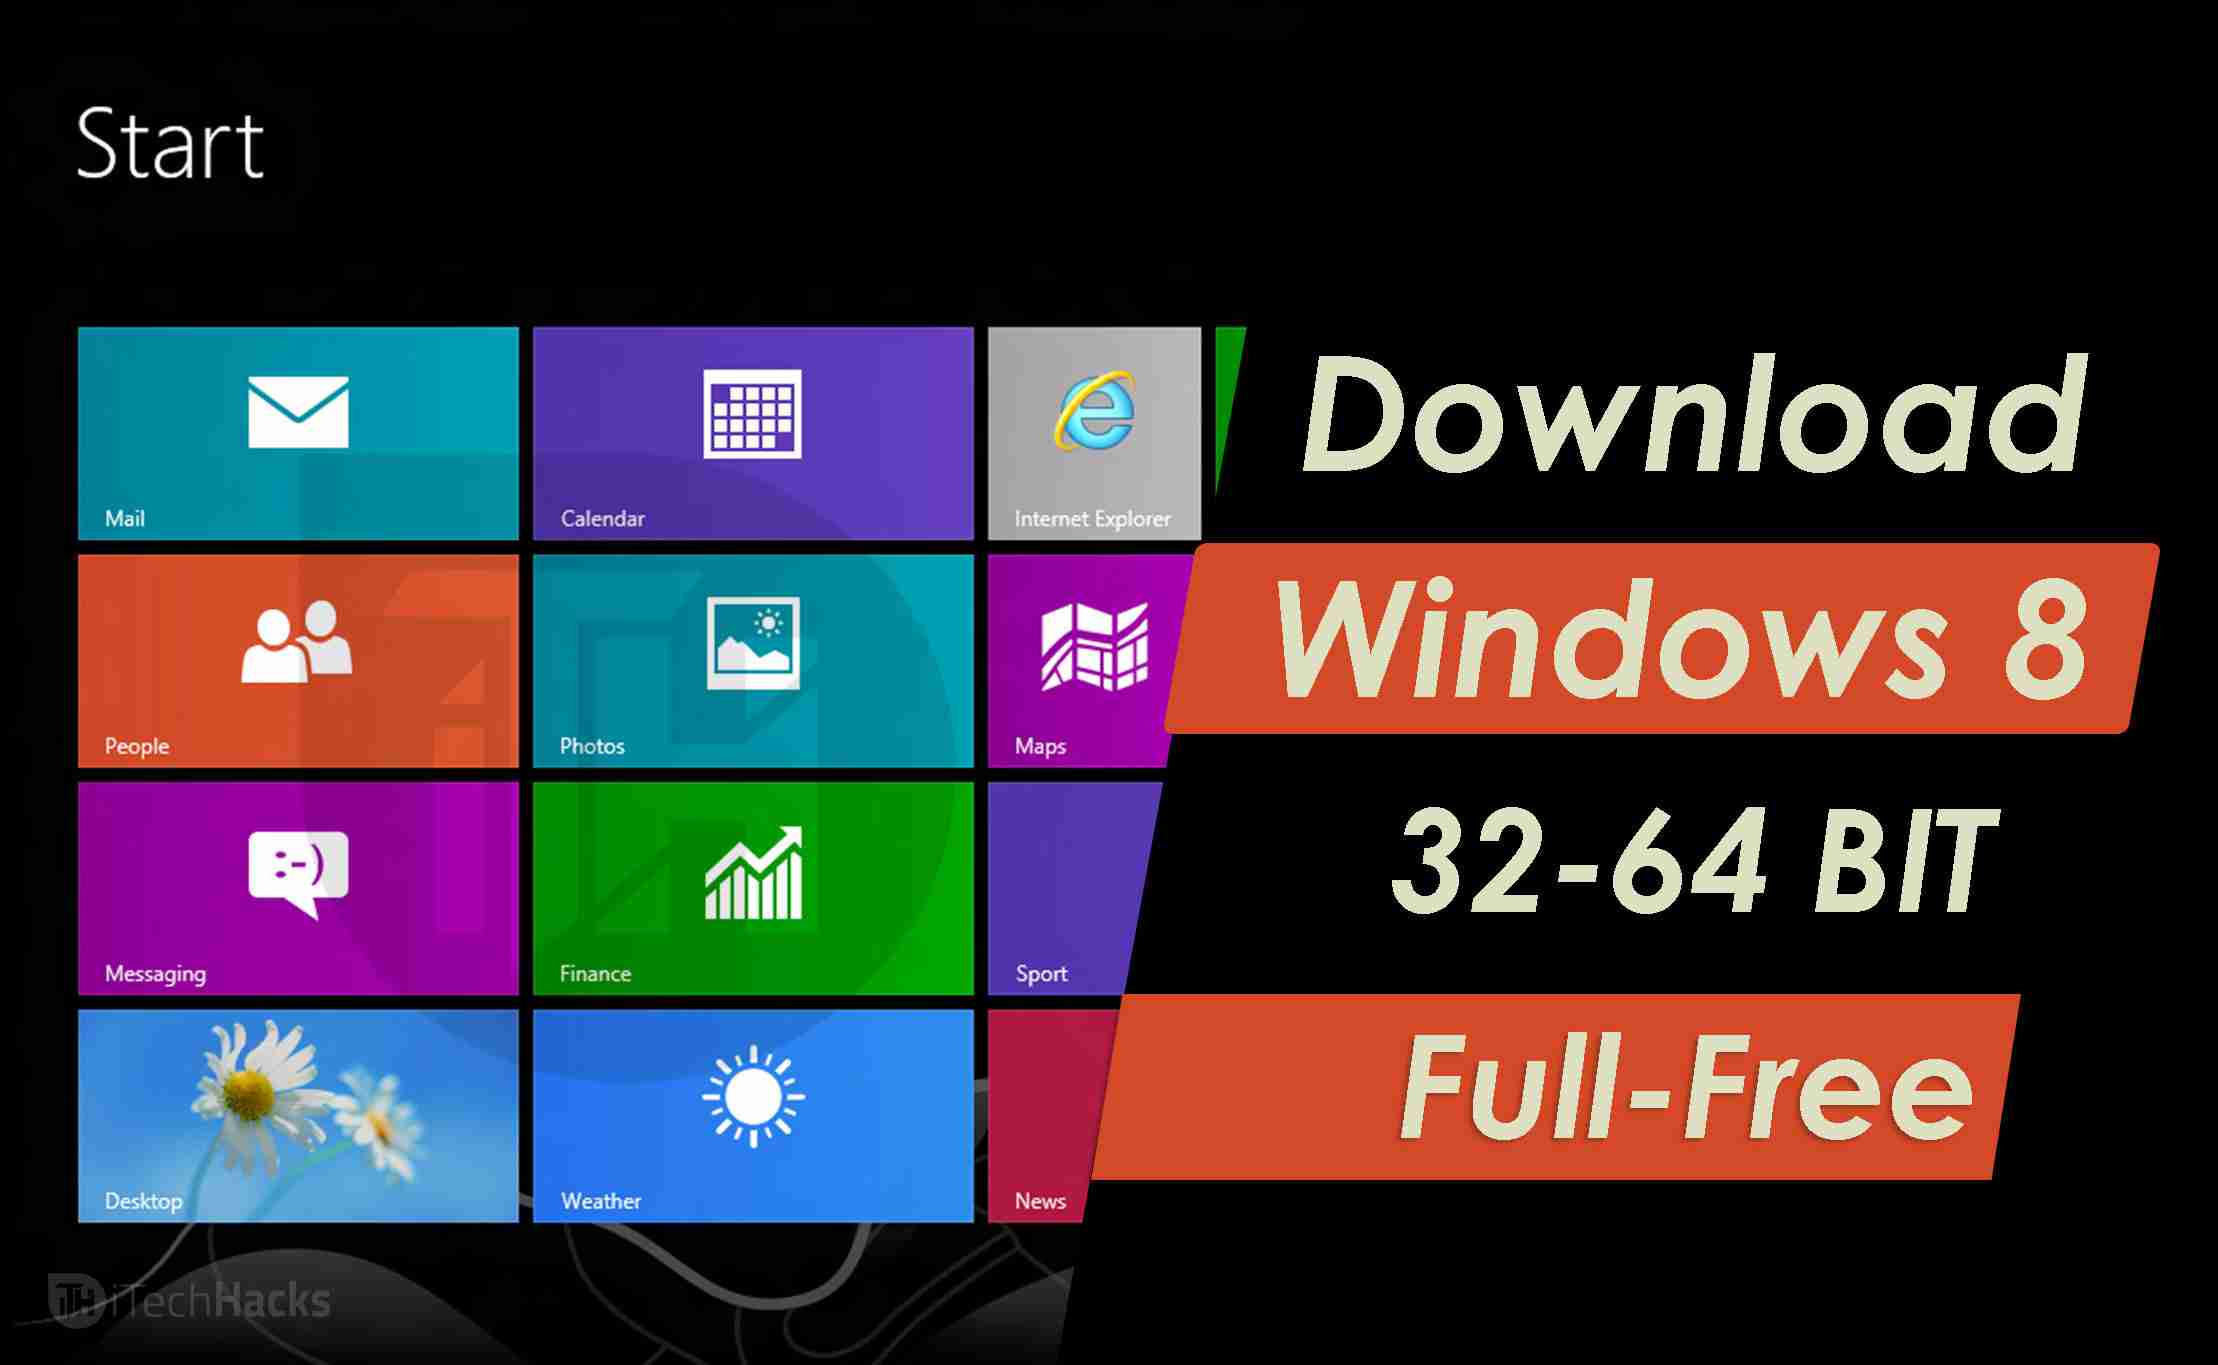 Kostenlose Windows 8 und 8.1 Produktschlüssel
Kostenloser Download von Windows 8.1 Pro 6.3.9600 ISO (32/64 Bit) mit Crack